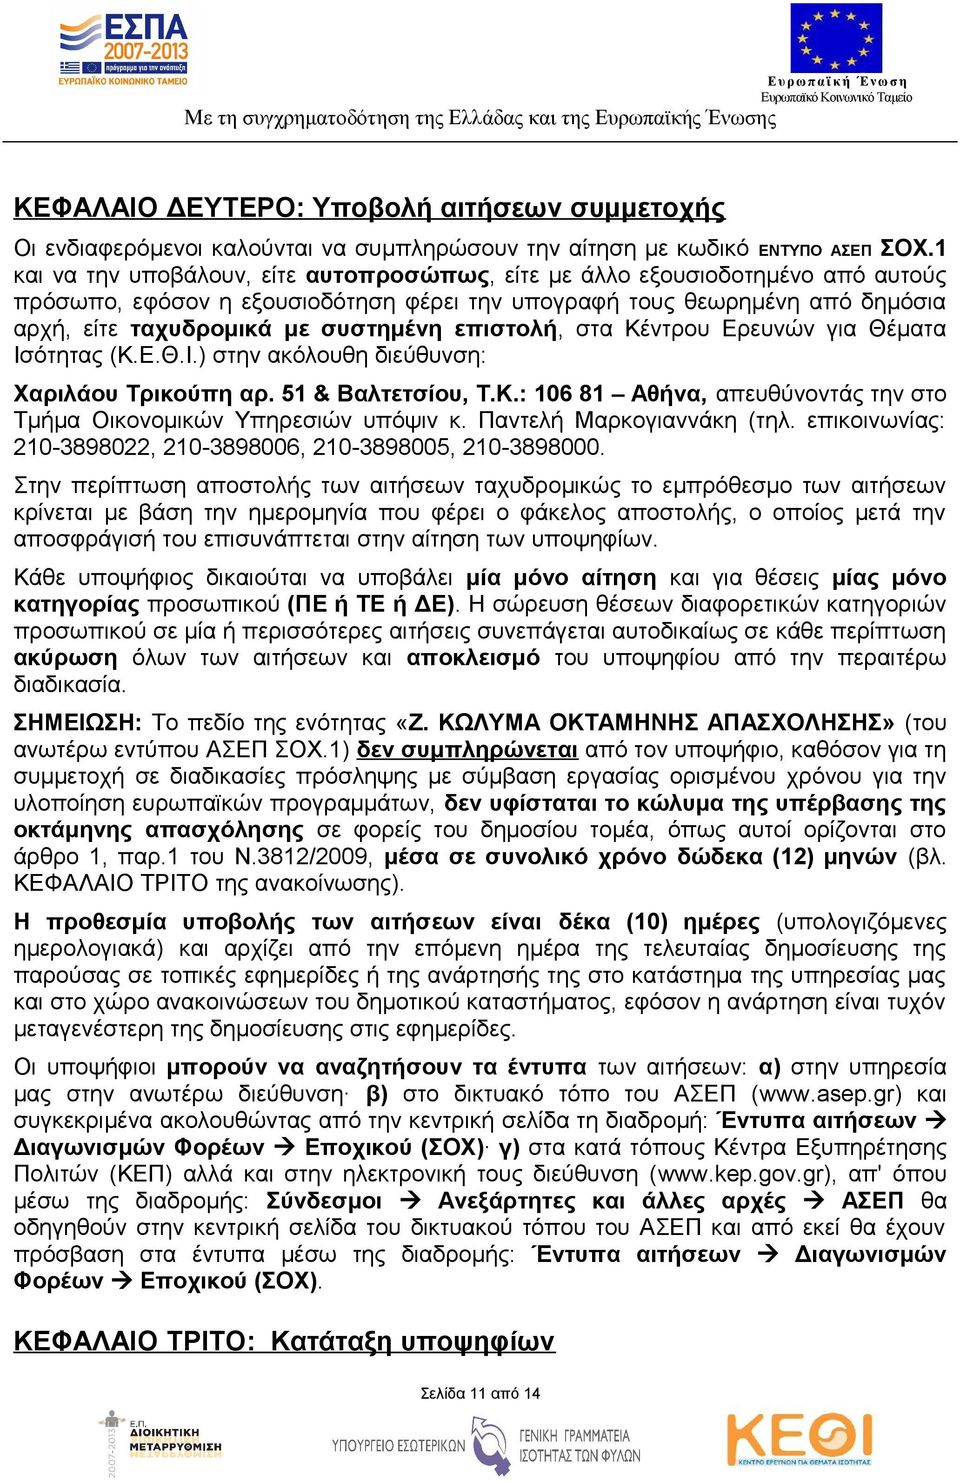 επιστολή, στα Κέντρου Ερευνών για Θέματα Ισότητας (Κ.Ε.Θ.Ι.) στην ακόλουθη διεύθυνση: Χαριλάου Τρικούπη αρ. 51 & Βαλτετσίου, Τ.Κ.: 106 81 Αθήνα, απευθύνοντάς την στο Τμήμα Οικονομικών Υπηρεσιών υπόψιν κ.